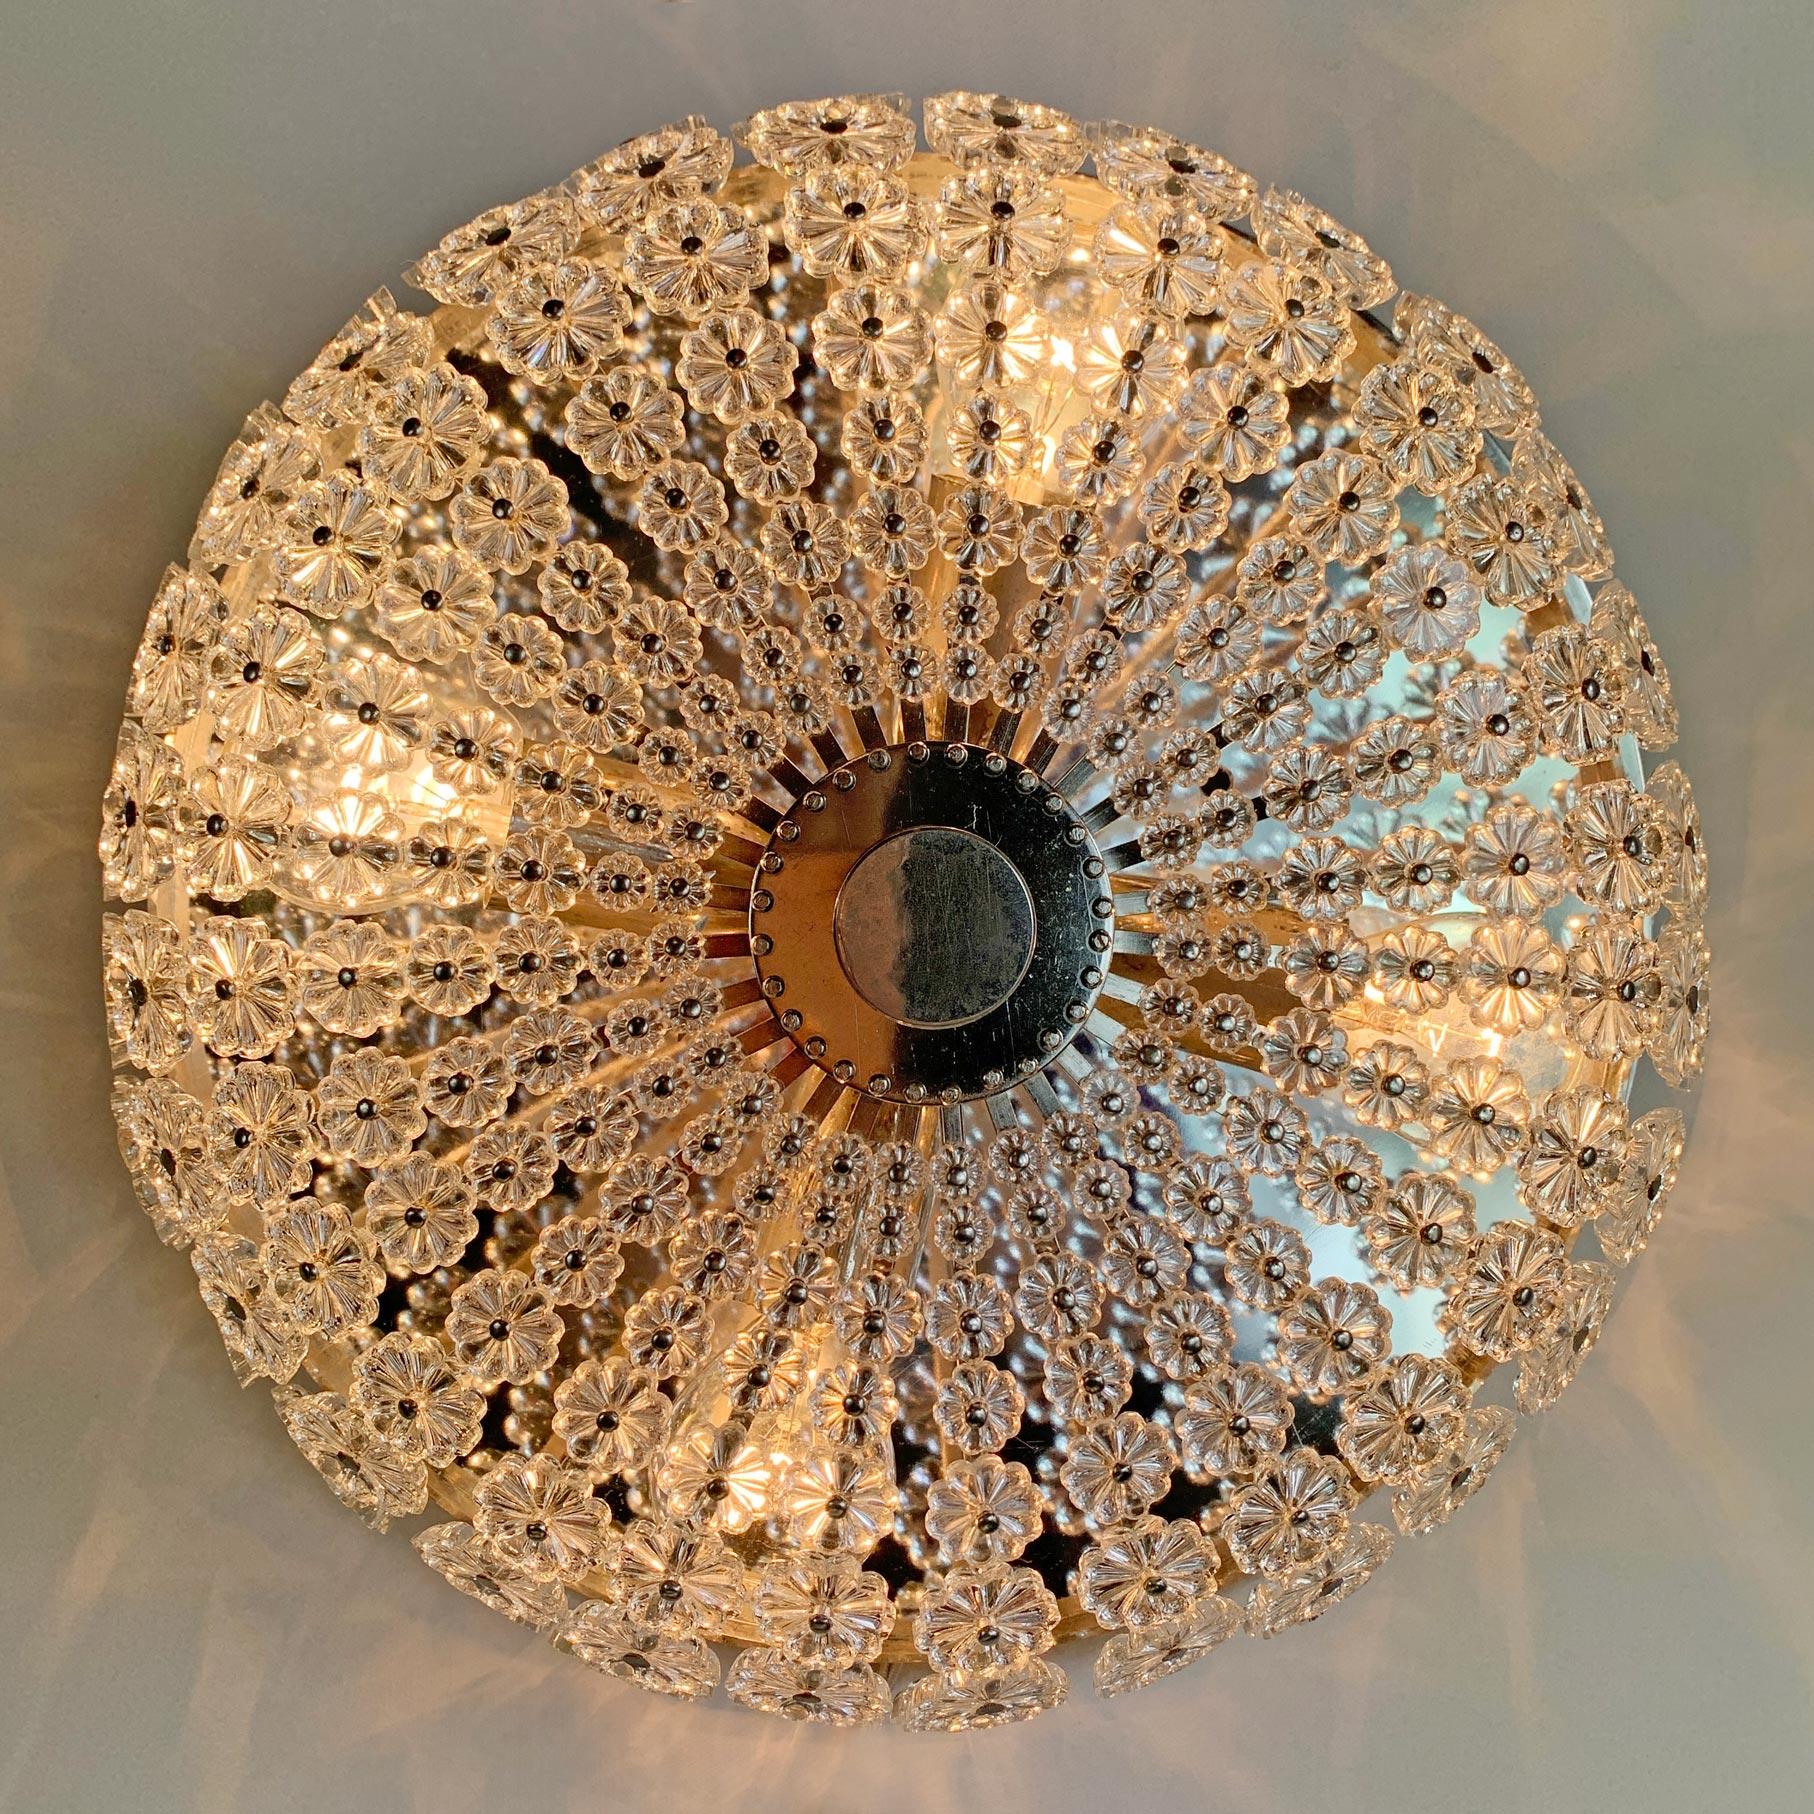 Emil Stejnar (Australien) Sonnenschliff-Einbauleuchte, entworfen für die Firma H. Richter, 1950er Jahre.
Elegante, seltene silberne Einbaubeleuchtung mit Hunderten von einzelnen kleinen, rückseitig geschliffenen Blumen aus Glas auf einem silbernen